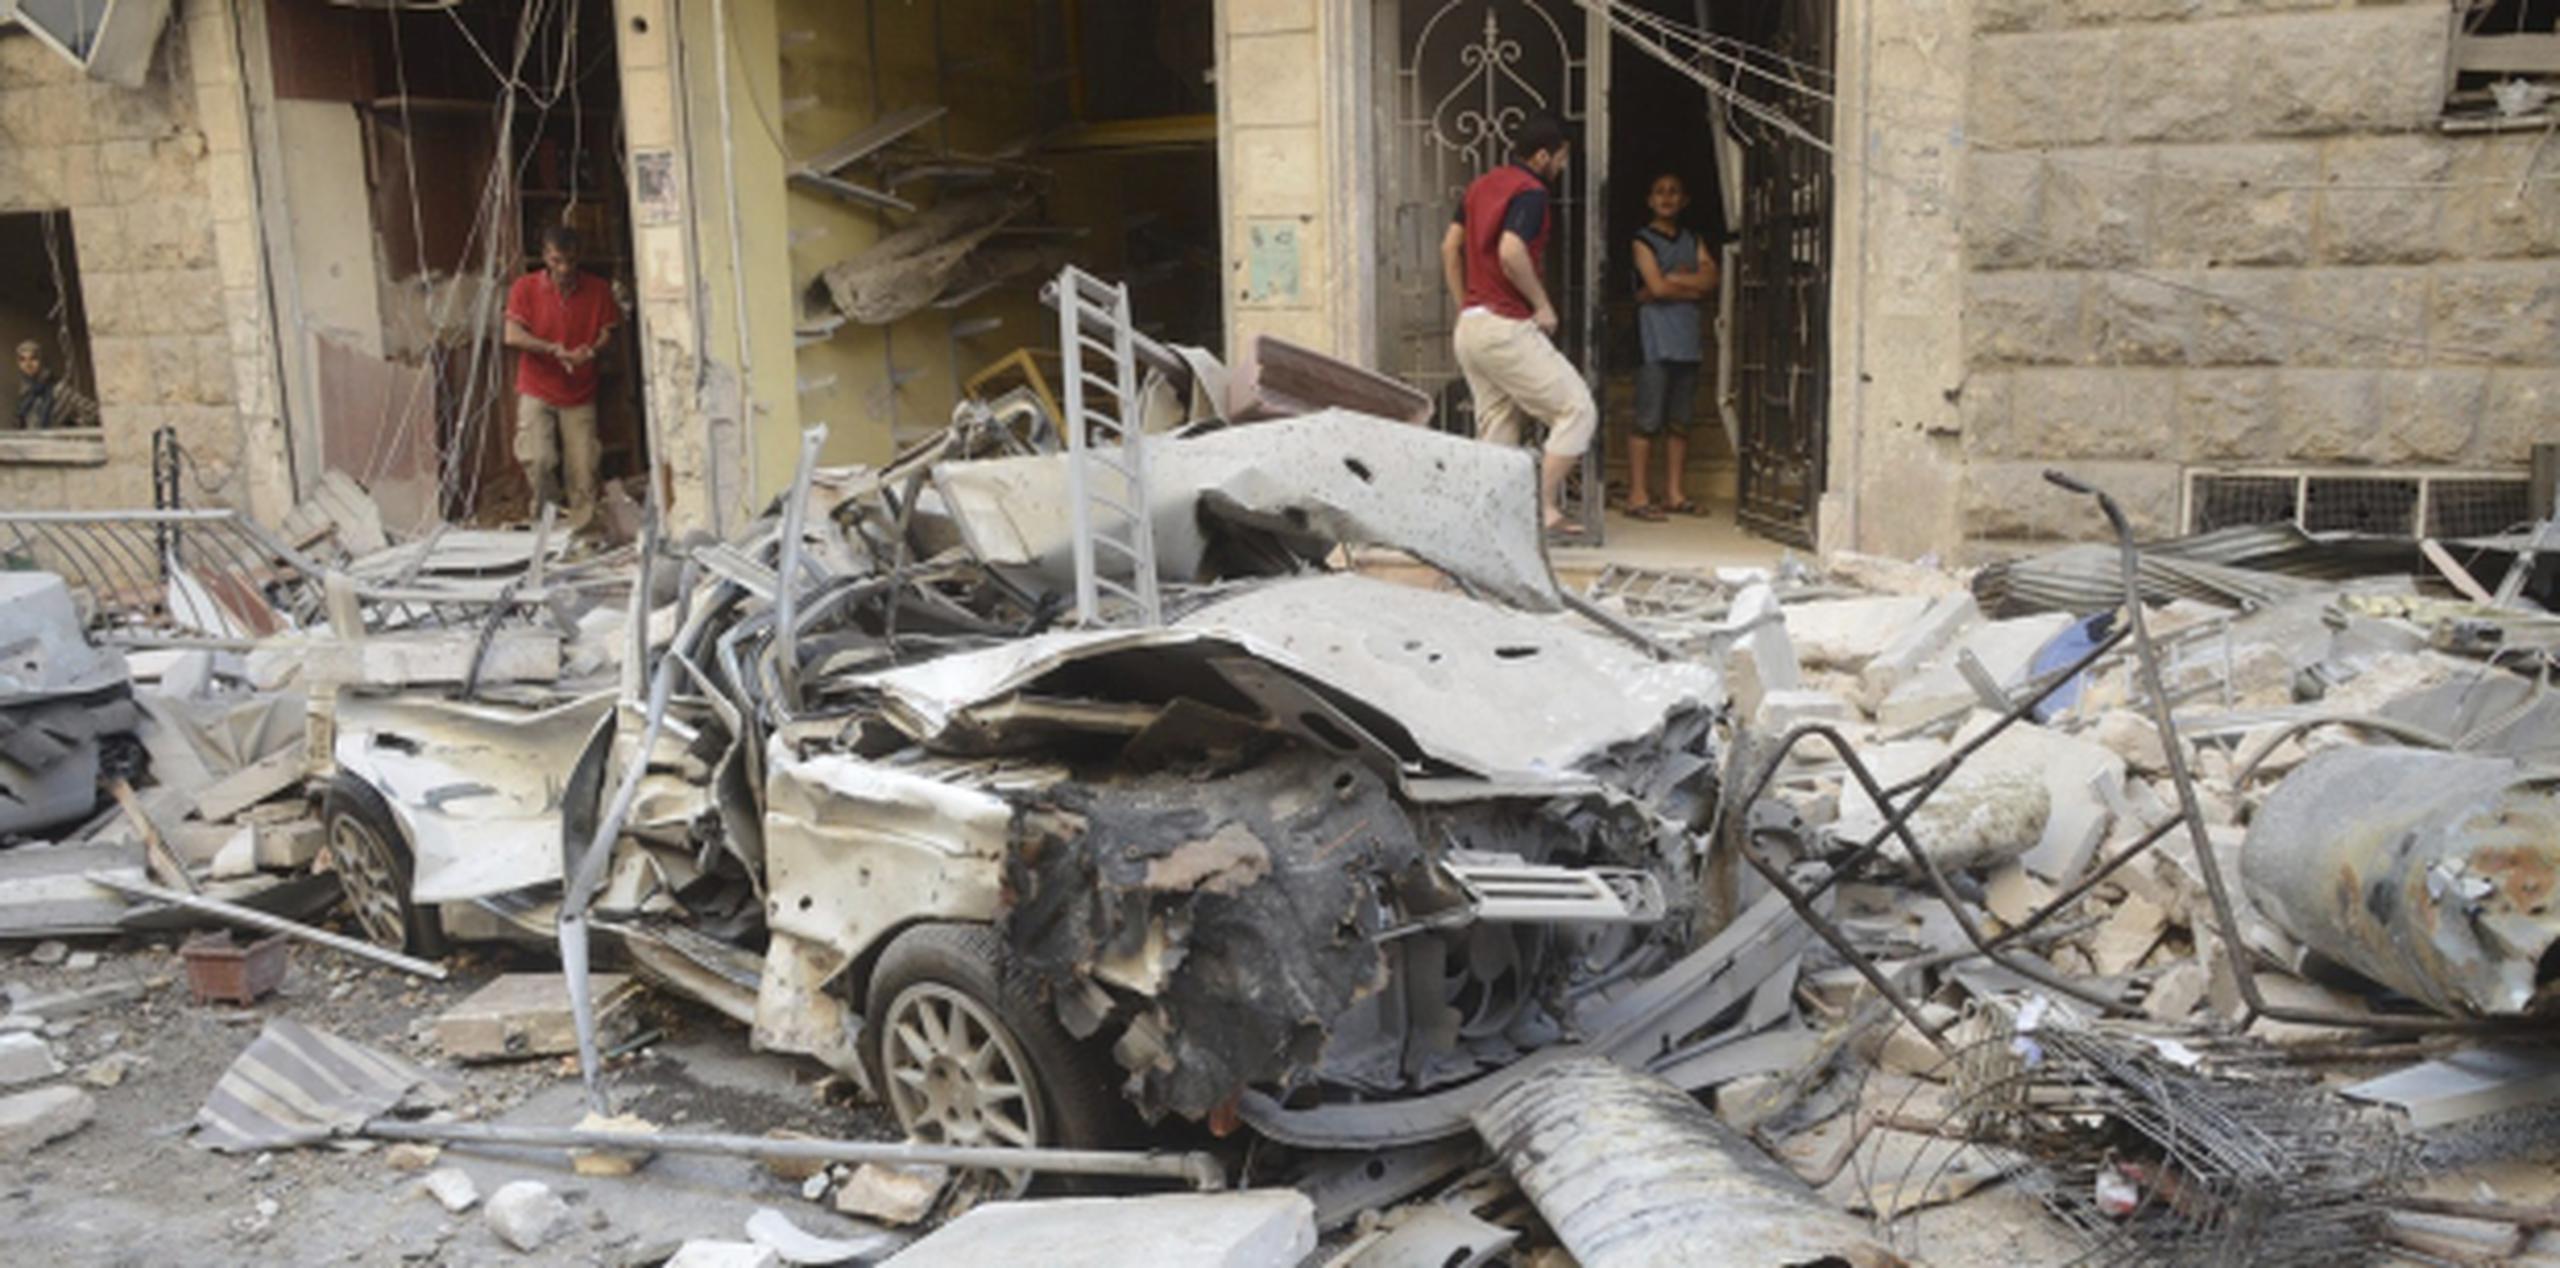 Alepo ha sido una de las ciudades más afectadas por la guerra en Siria. (EFE/Sana Handout)